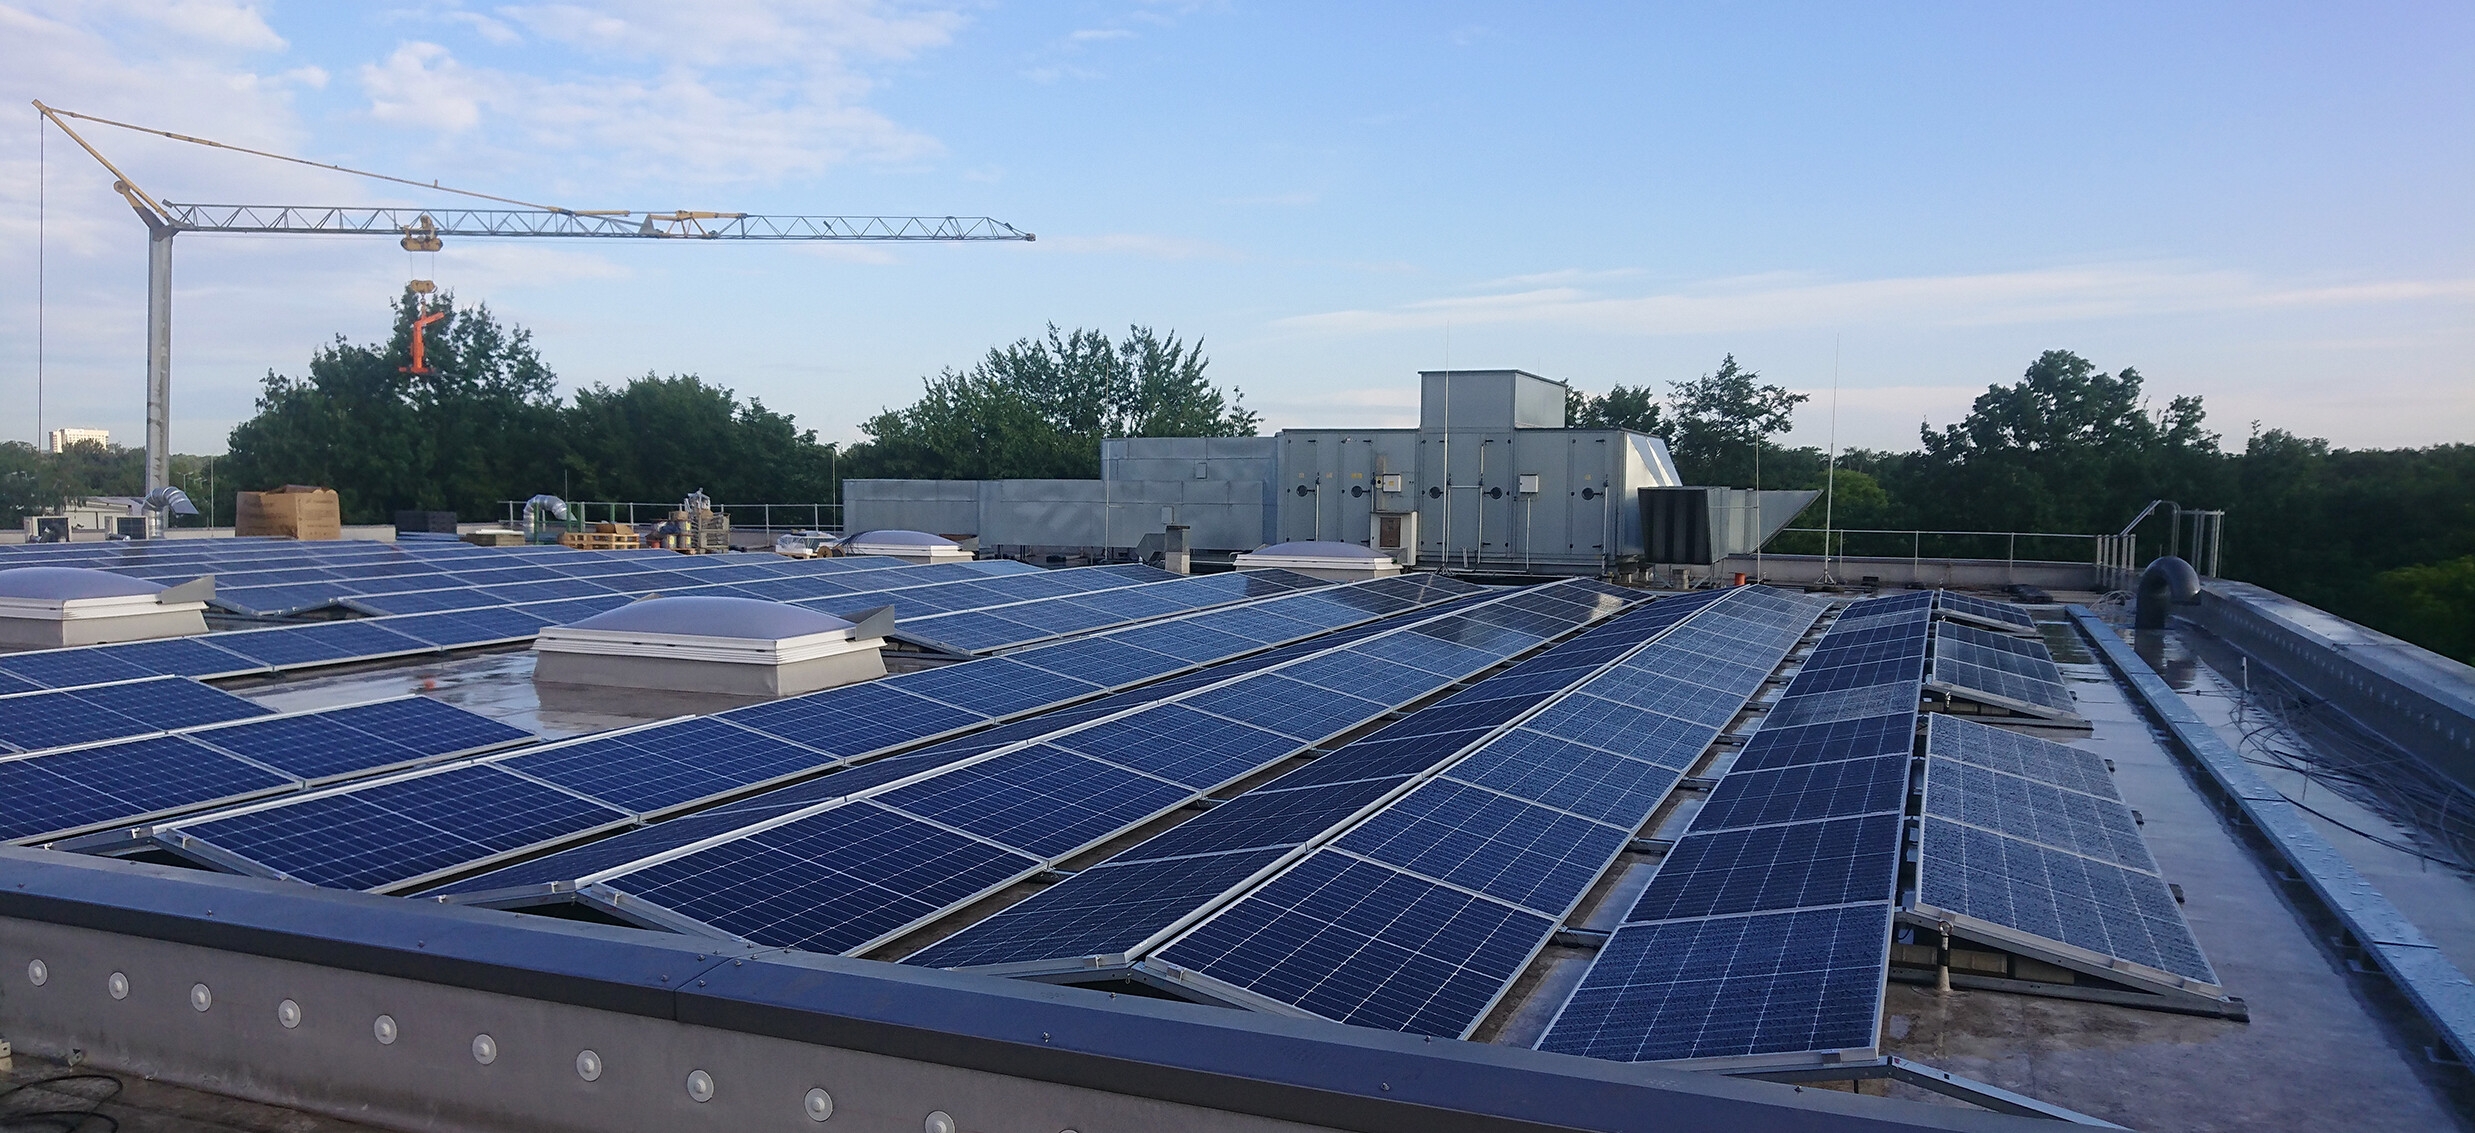 Eine Produktionshalle mit energetischer Nutzung der Dachflächen in Gelsenkirchen. Mit der neuen Photovoltaikanlage fließt selbst produzierter Ökostrom direkt in die Produktion vor Ort.